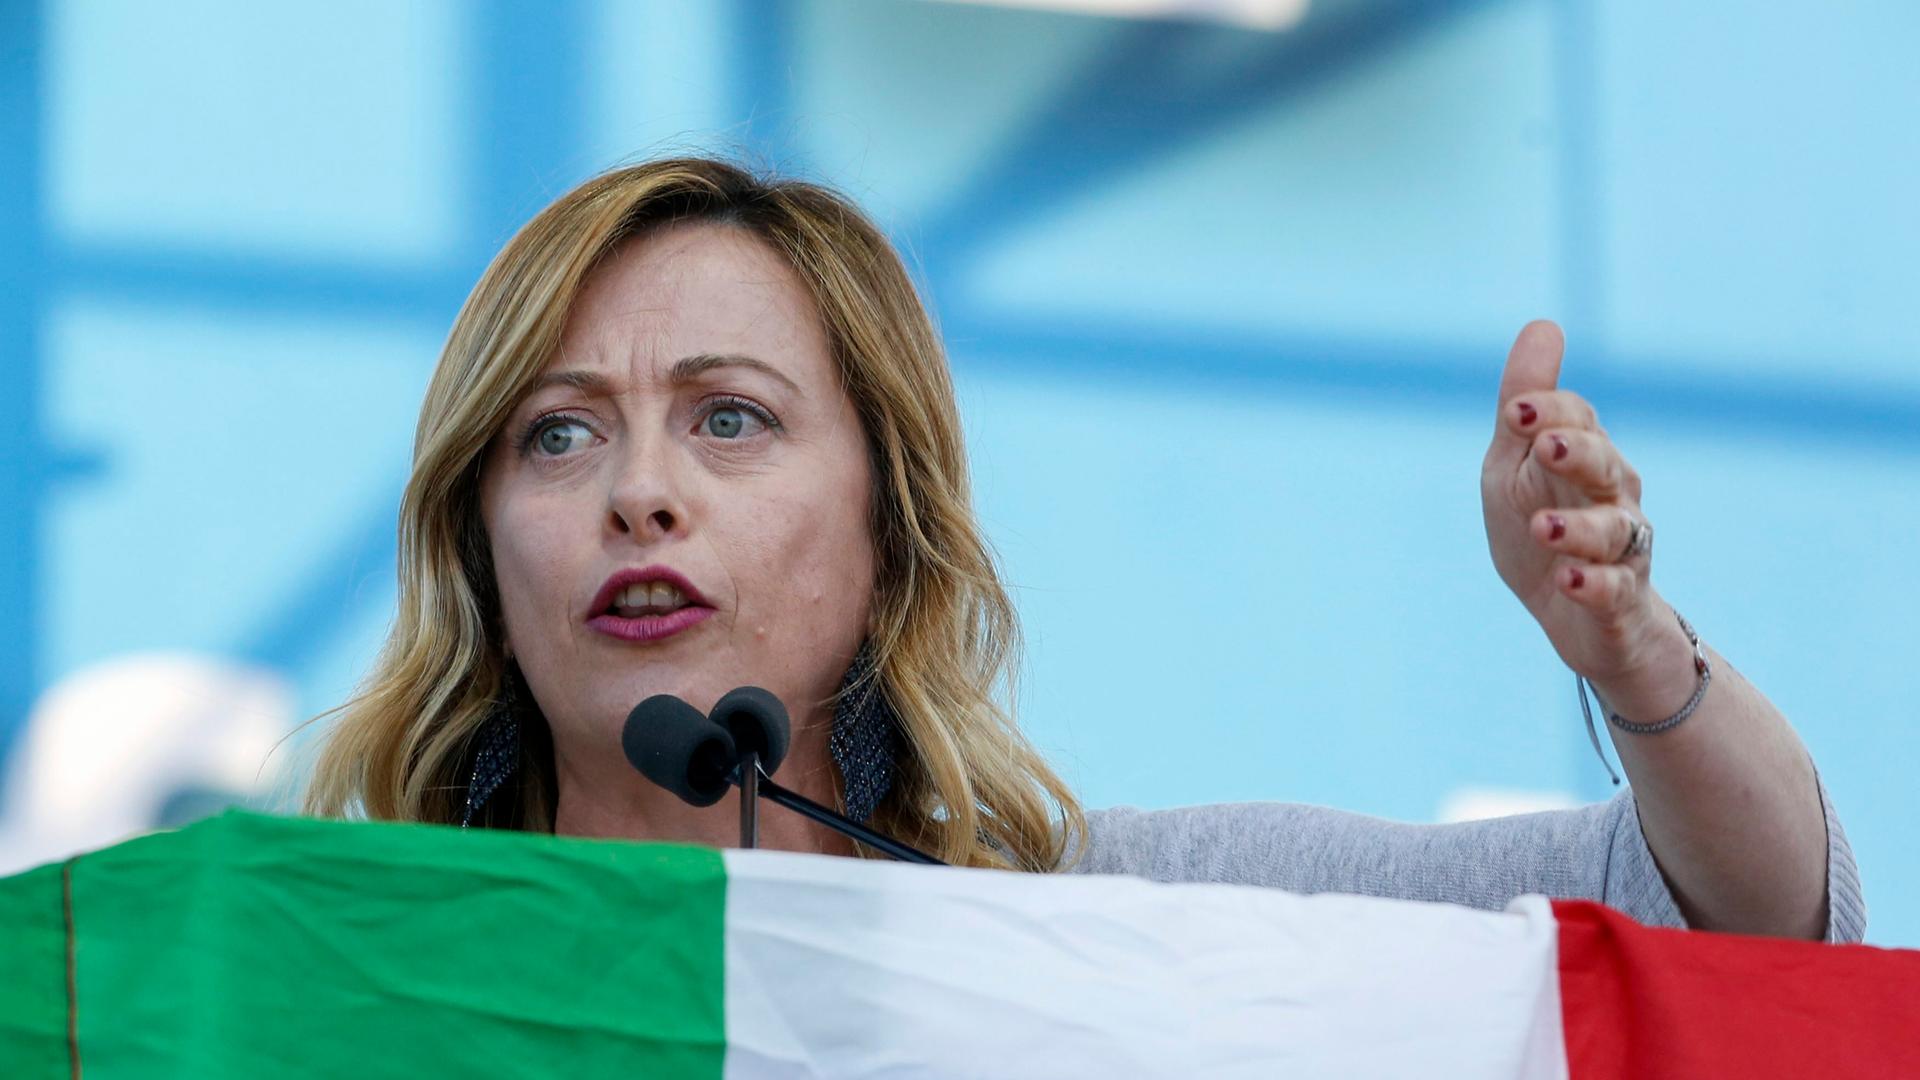 Giorgia Meloni spricht an einem Pult, welches mit der italienischen Fahne verhangen ist.